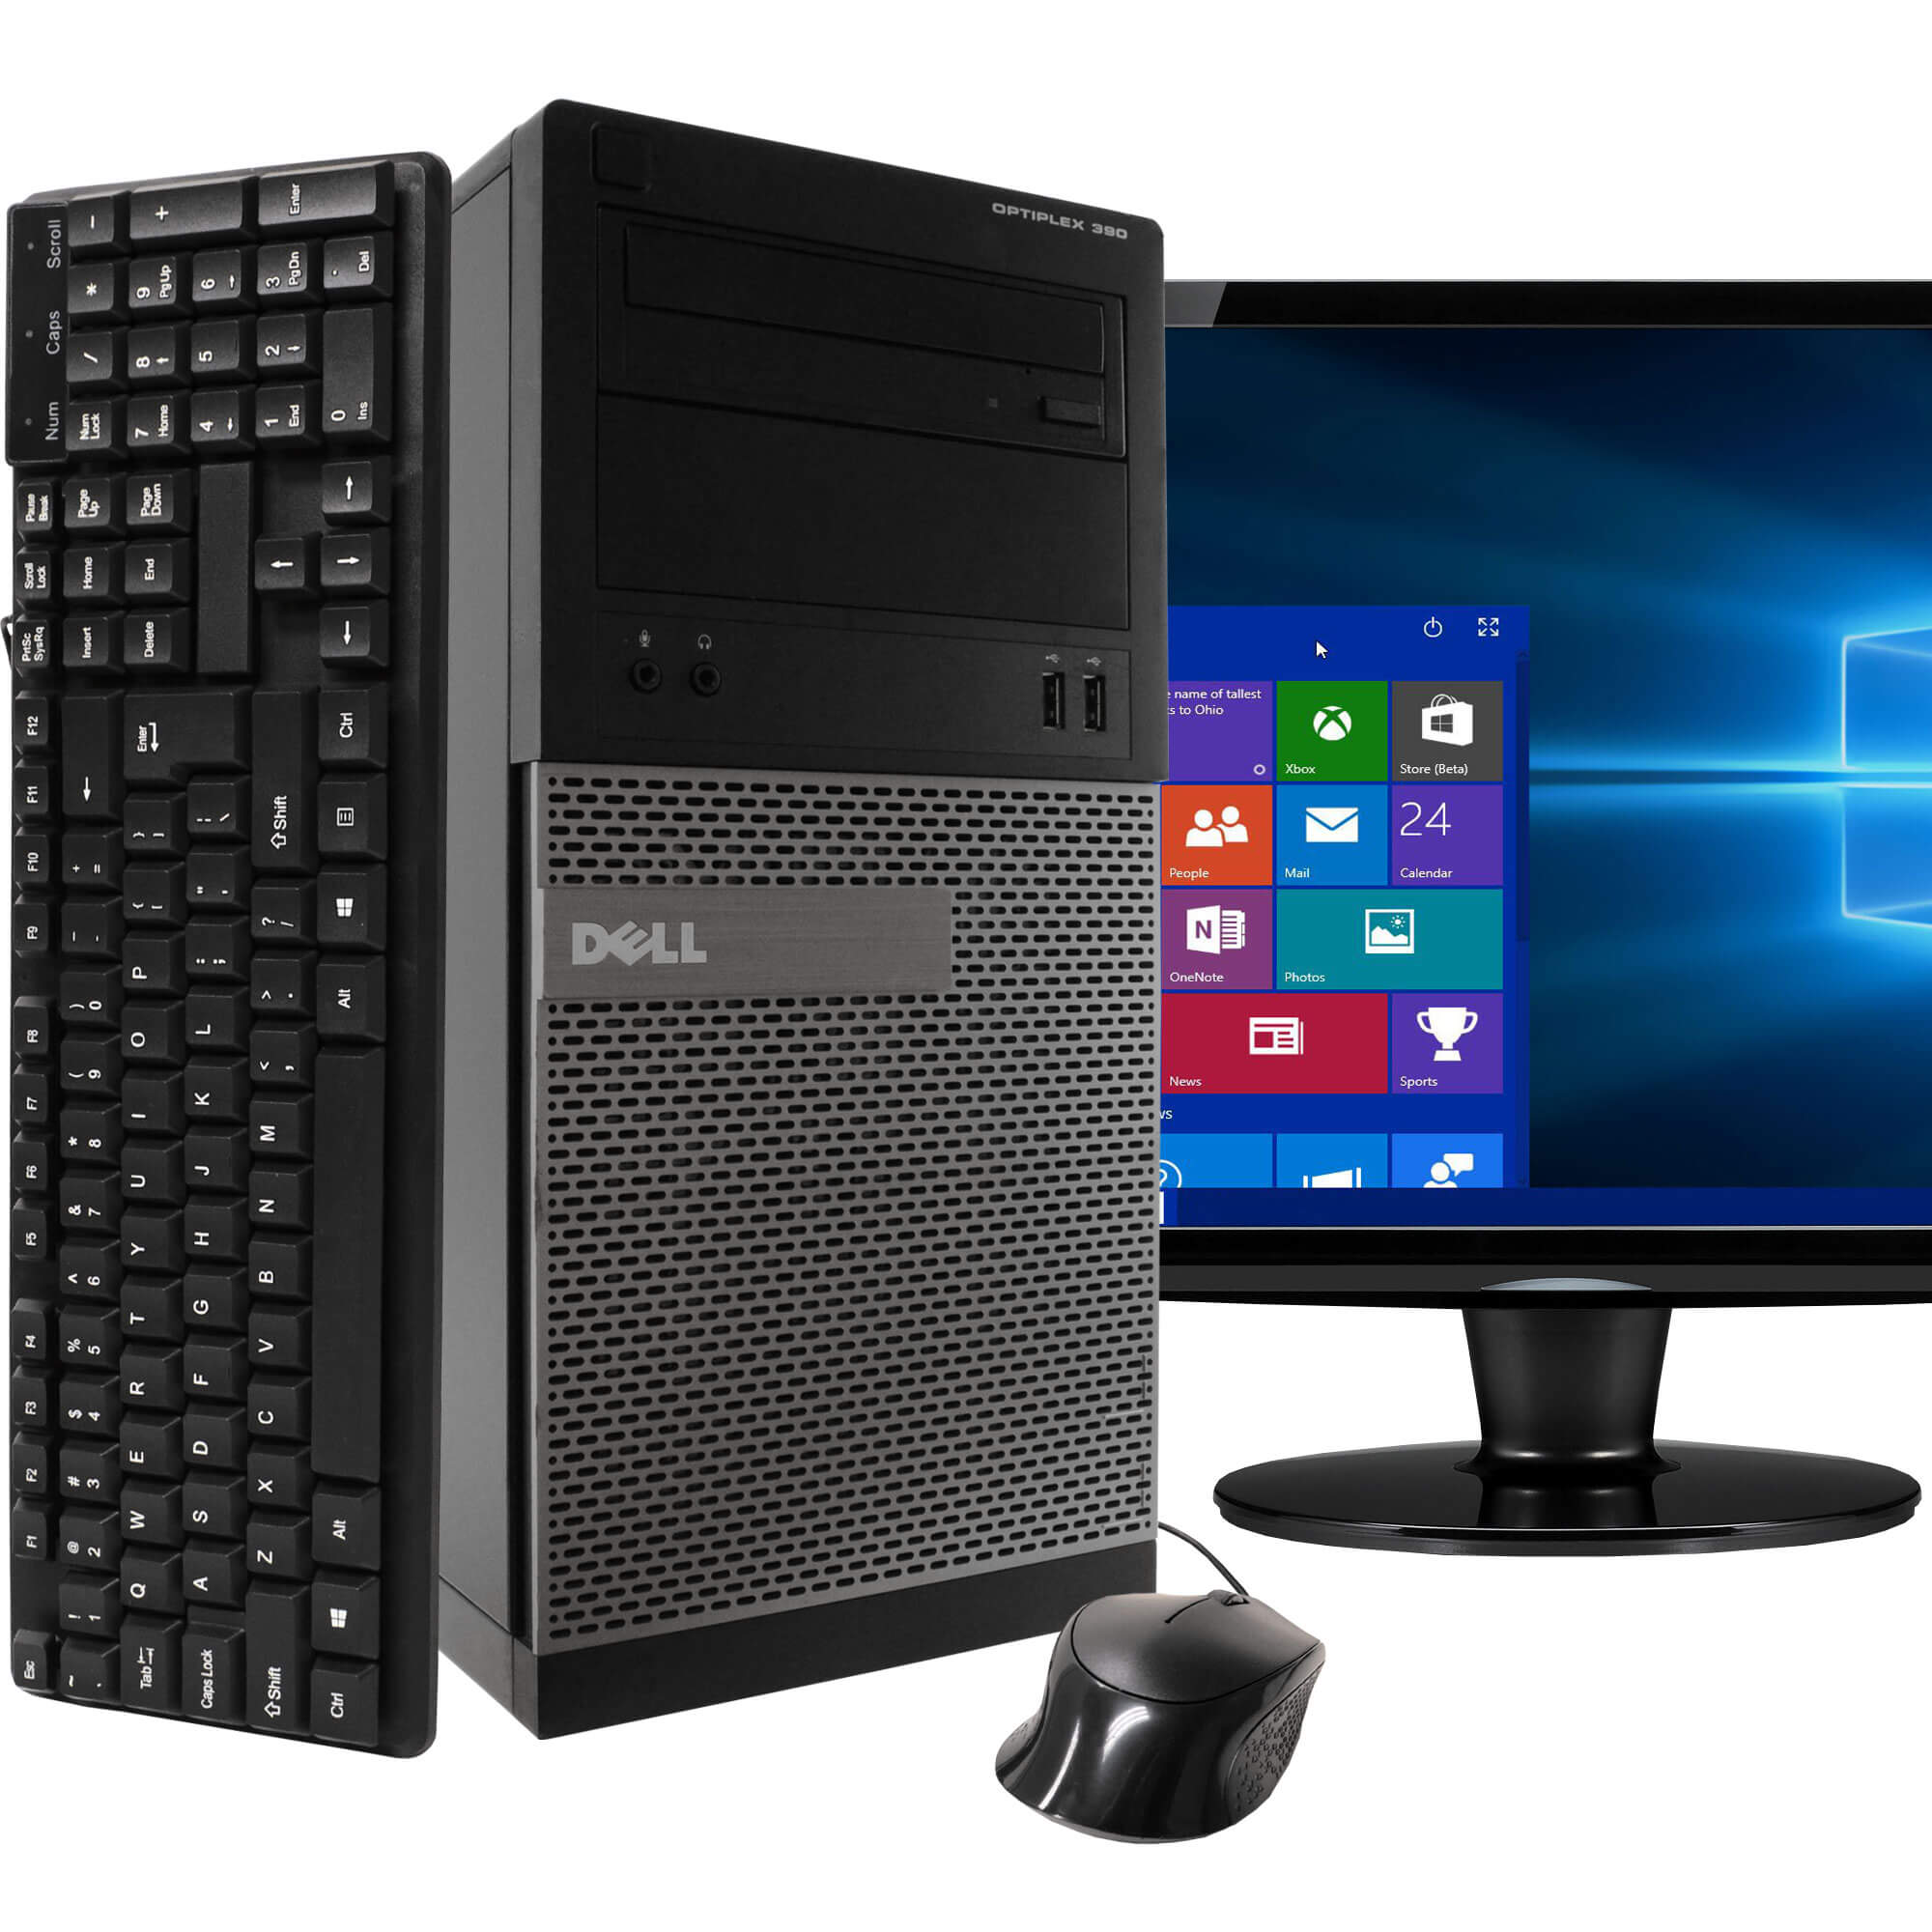 Dell 390 Tower PC, 3.2GHz Intel i5 Quad Core Gen 2, 8GB RAM, 1TB SATA HD, Windows 10 Professional 64 bit, 22" Screen (Renewed)